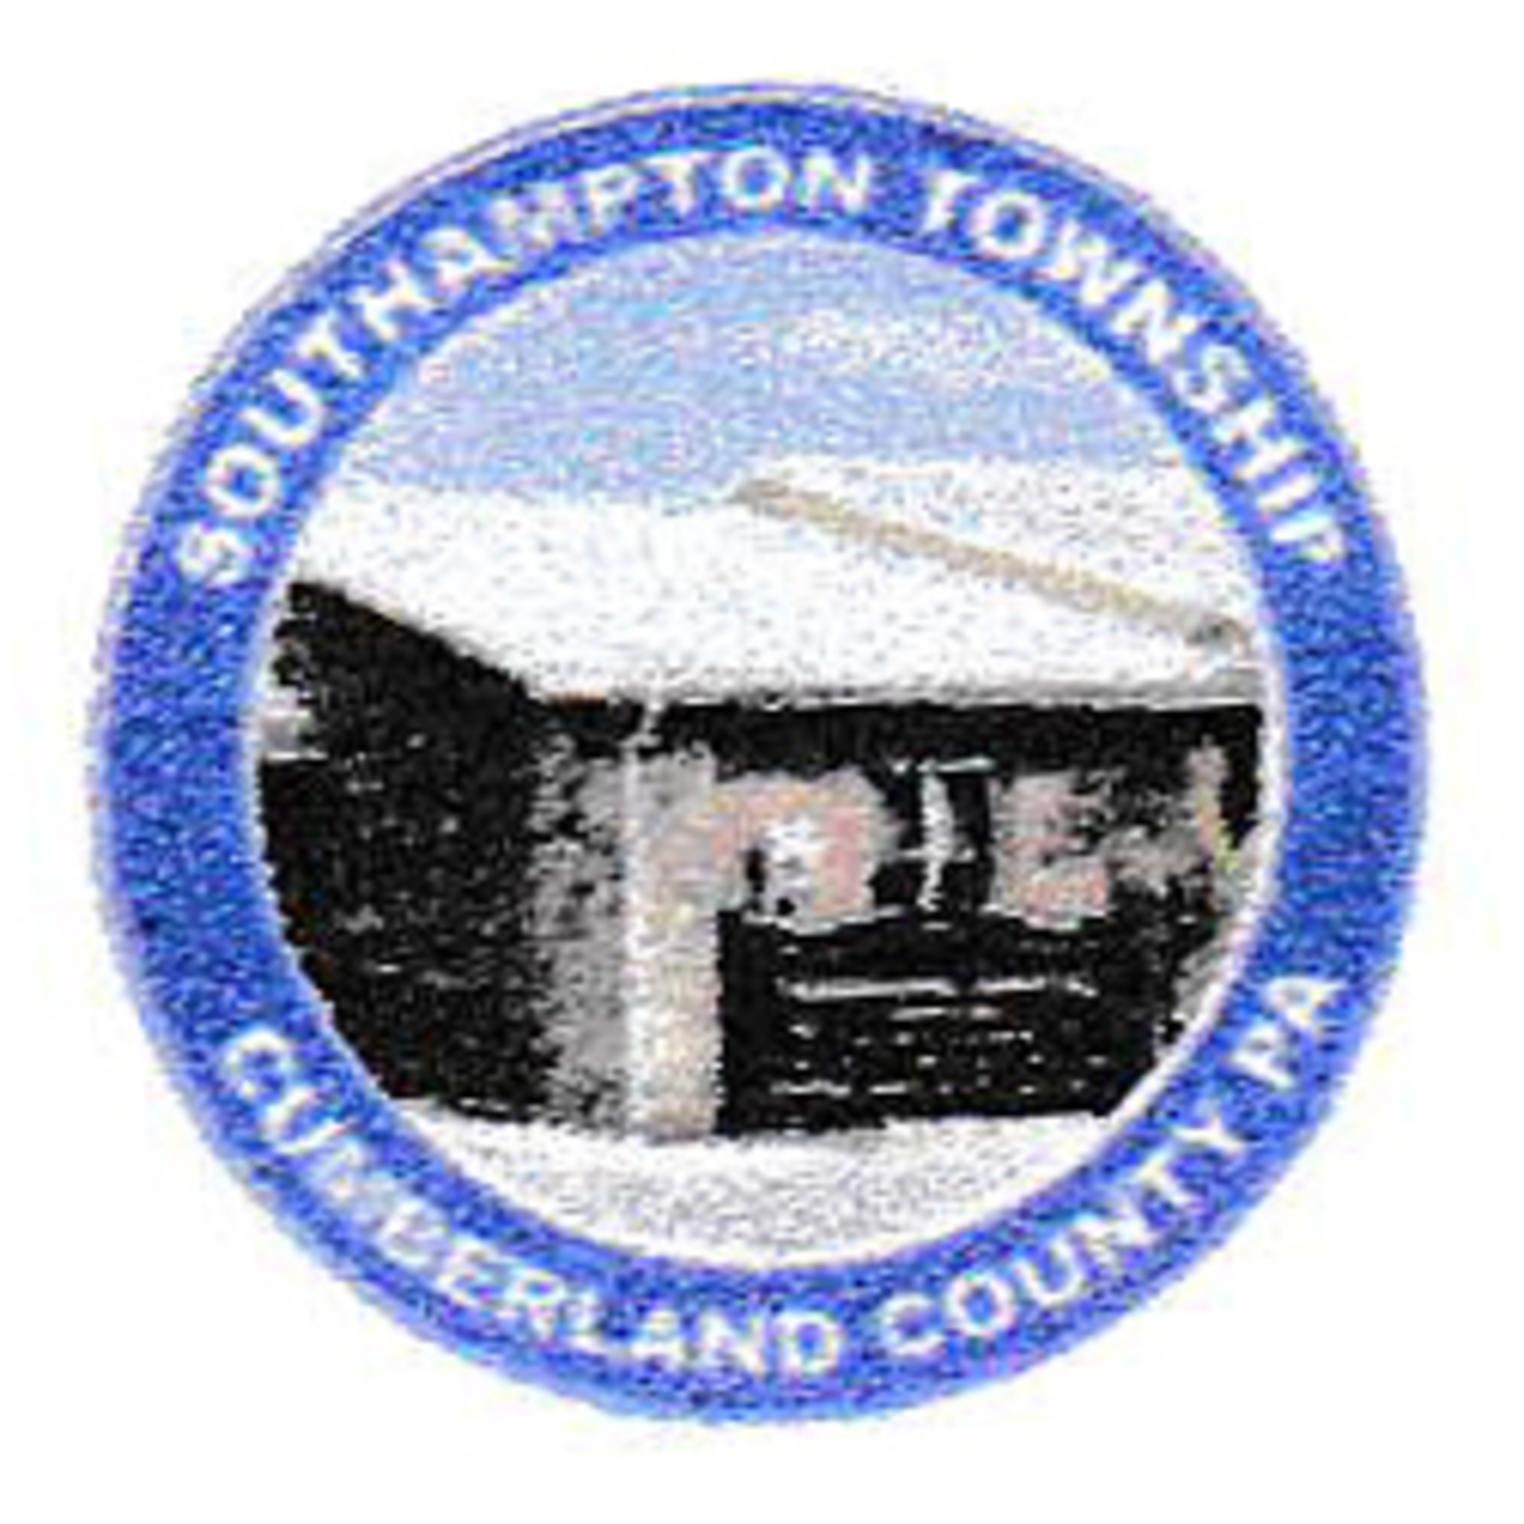 Southampton Township